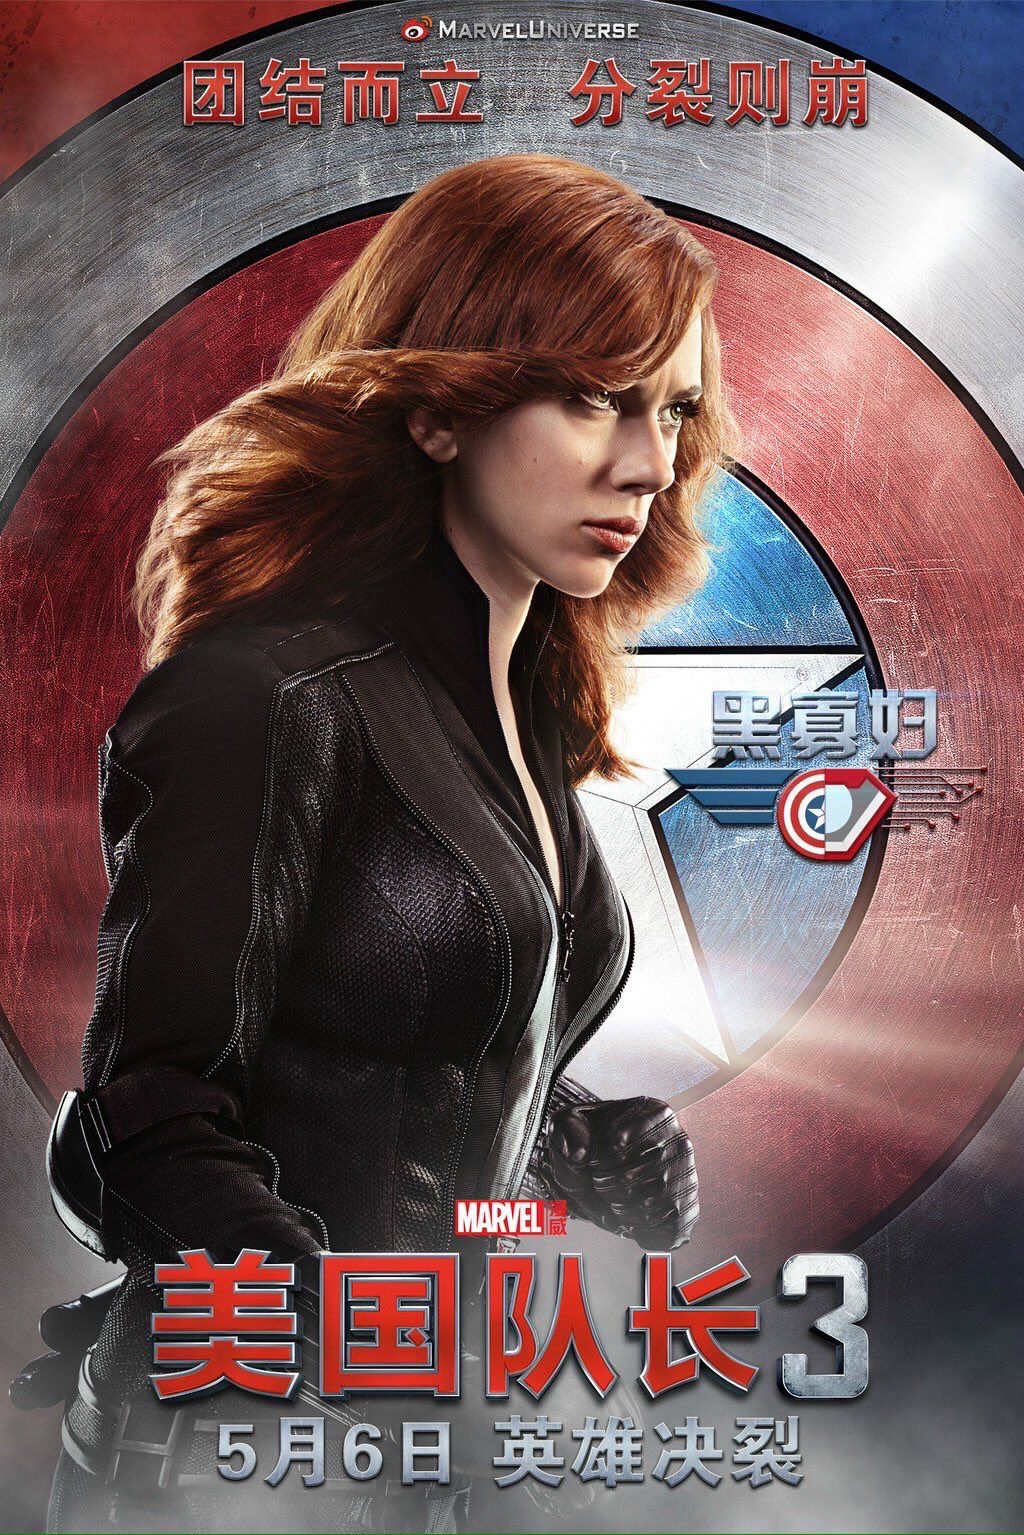 Captain America Civil War Poster 3